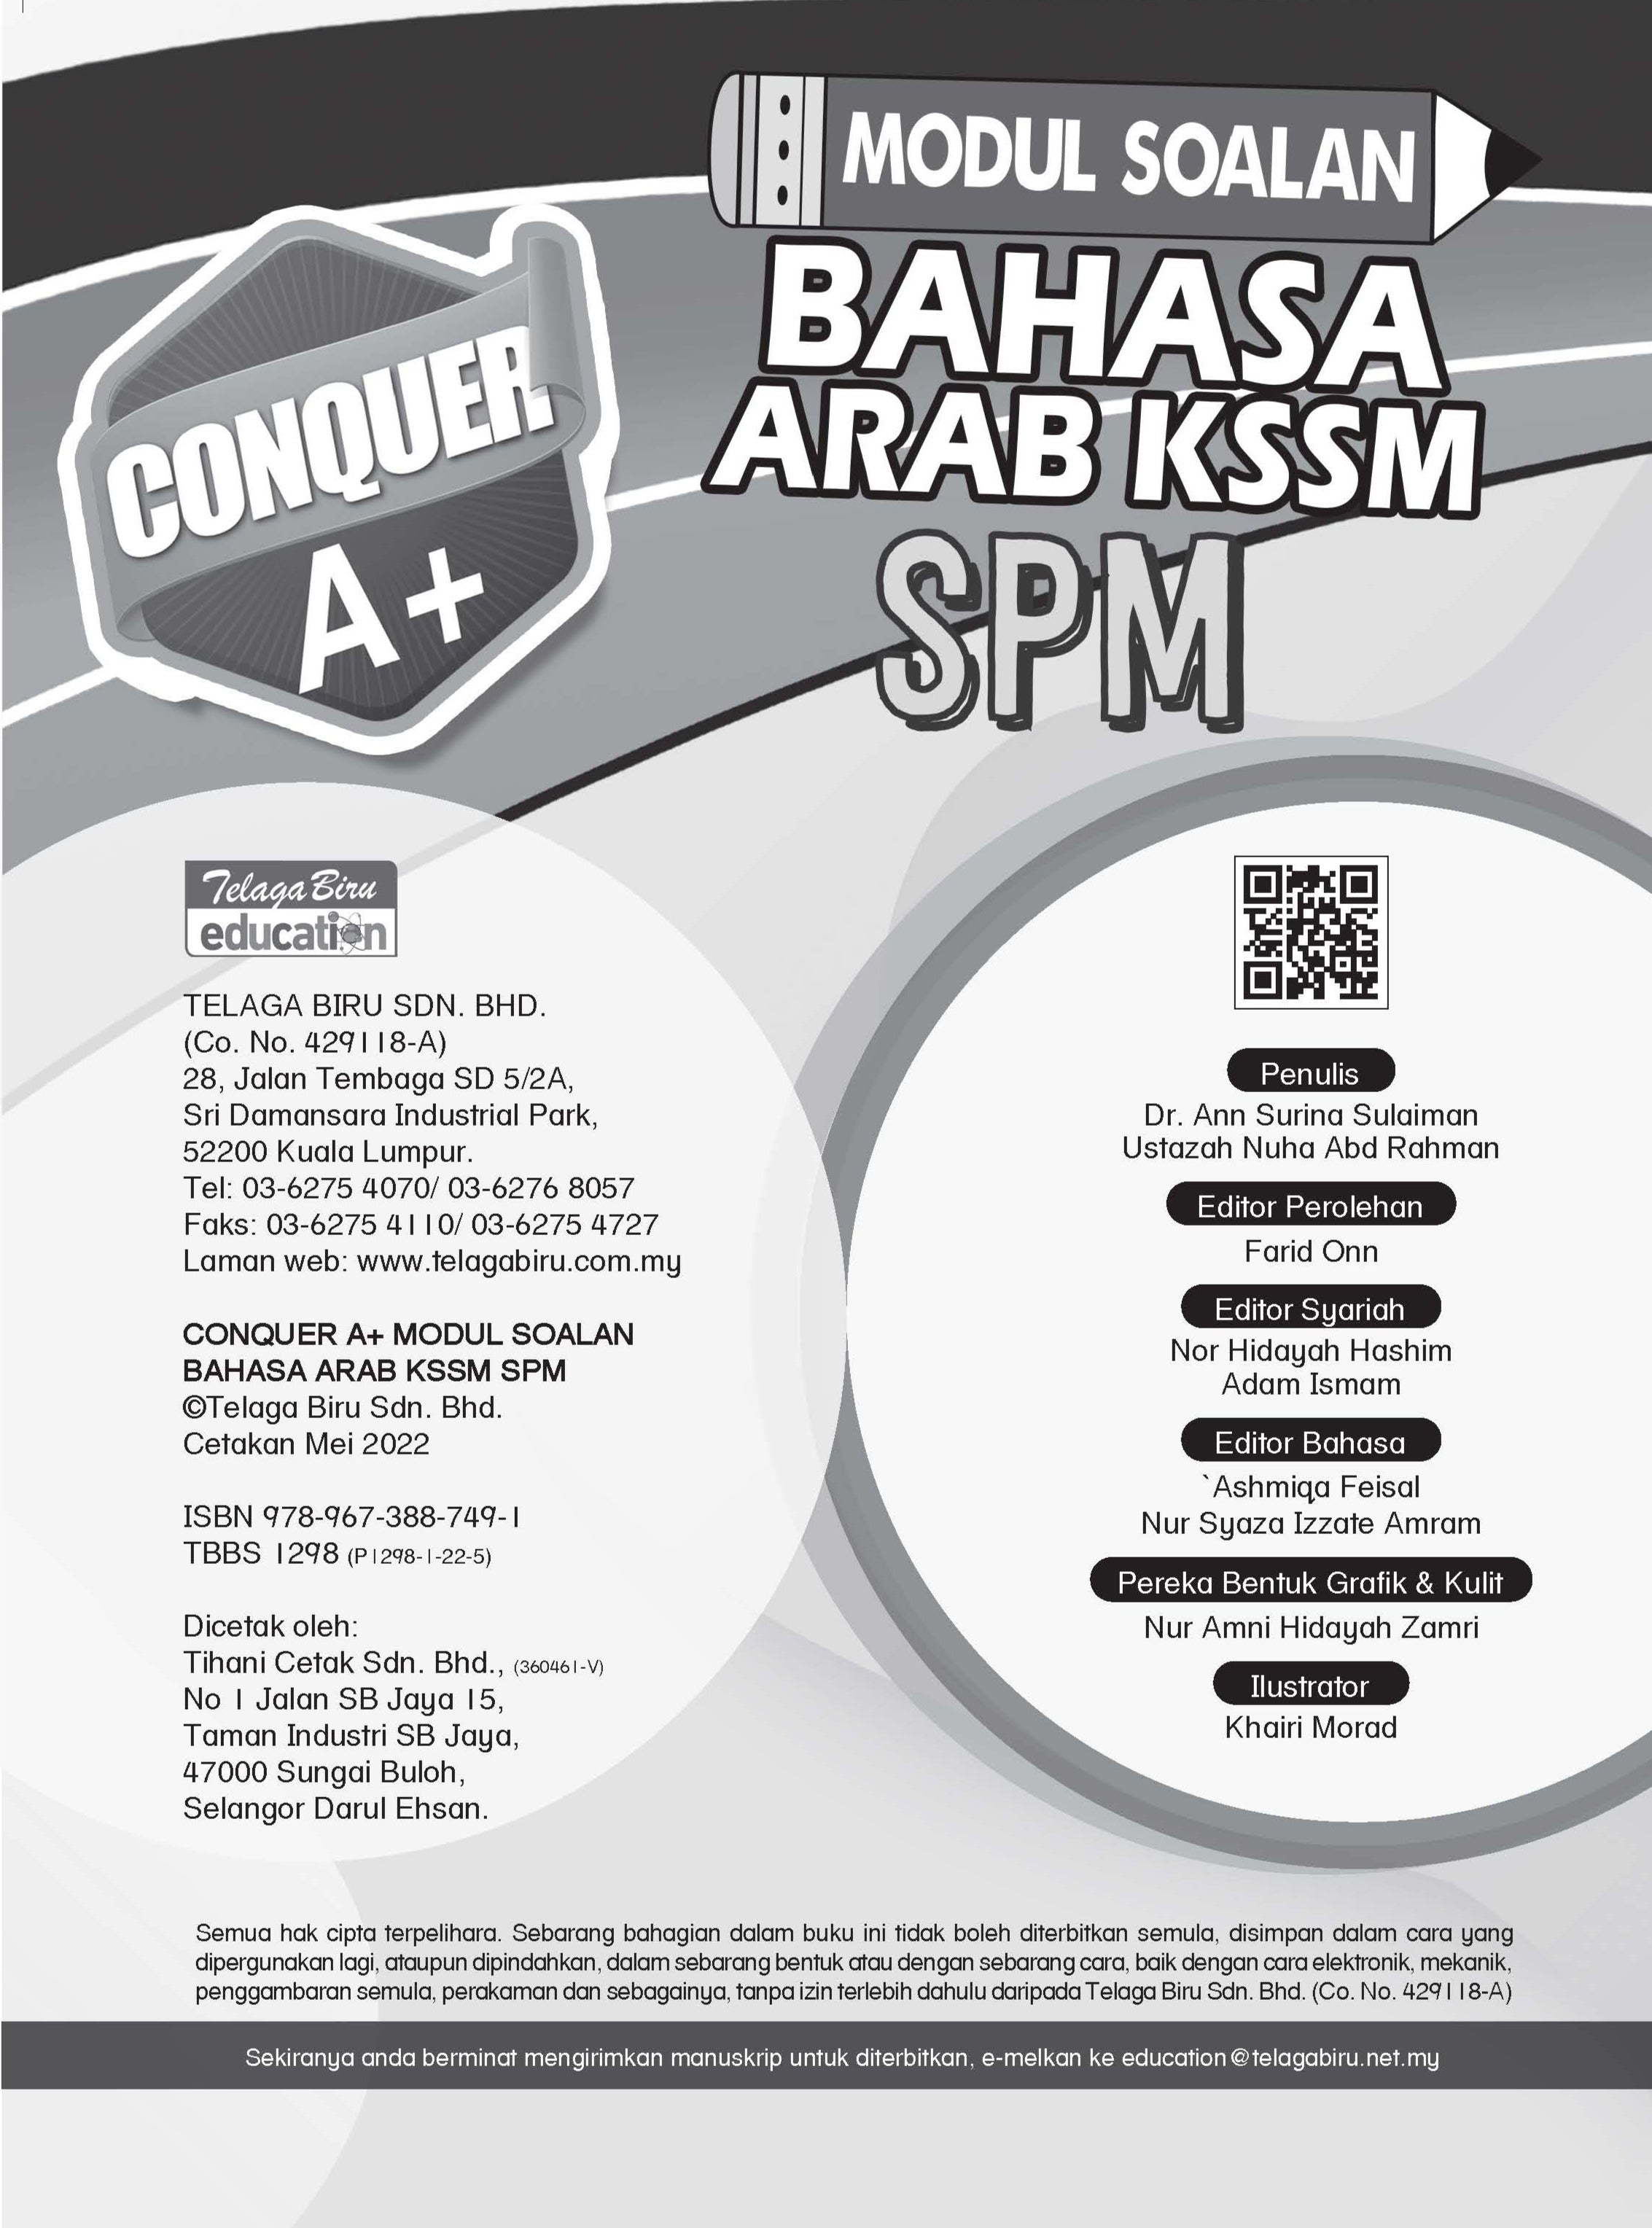 Conquer A+ Modul Soalan Bahasa Arab KSSM SPM - (TBBS1298)